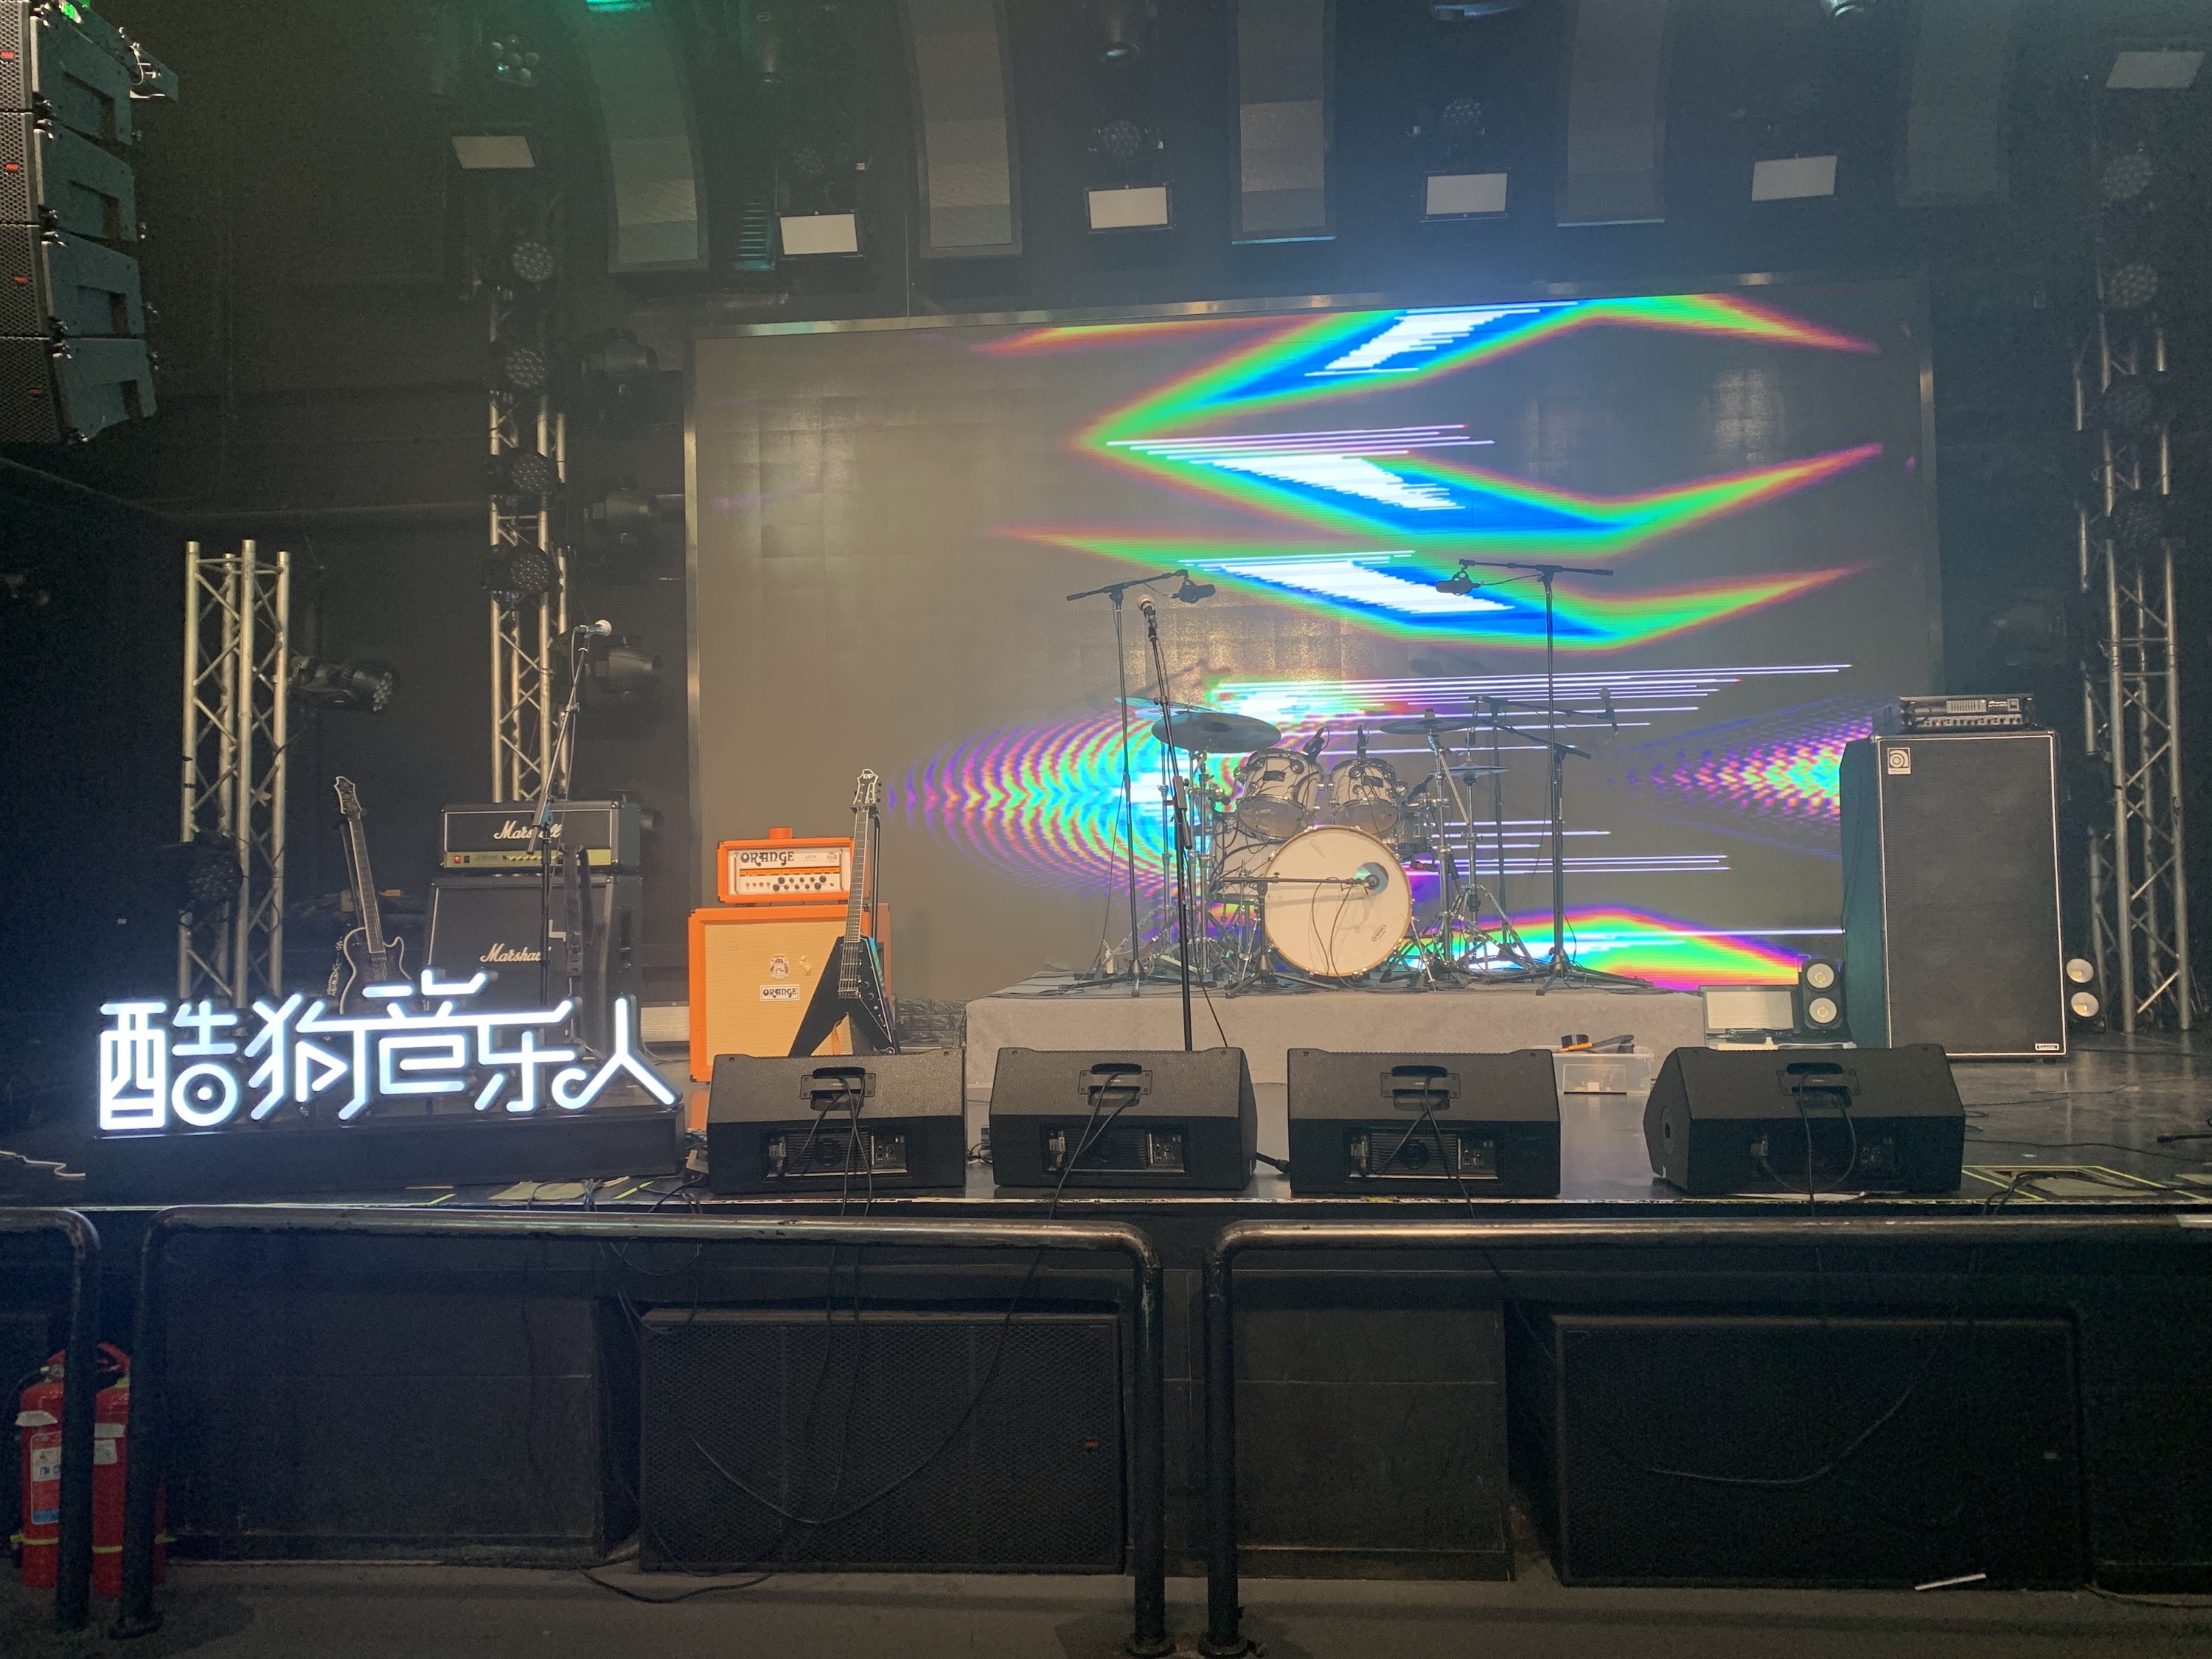 🎥 GMIC Live 2020 Closing Livestream @ MAO live house